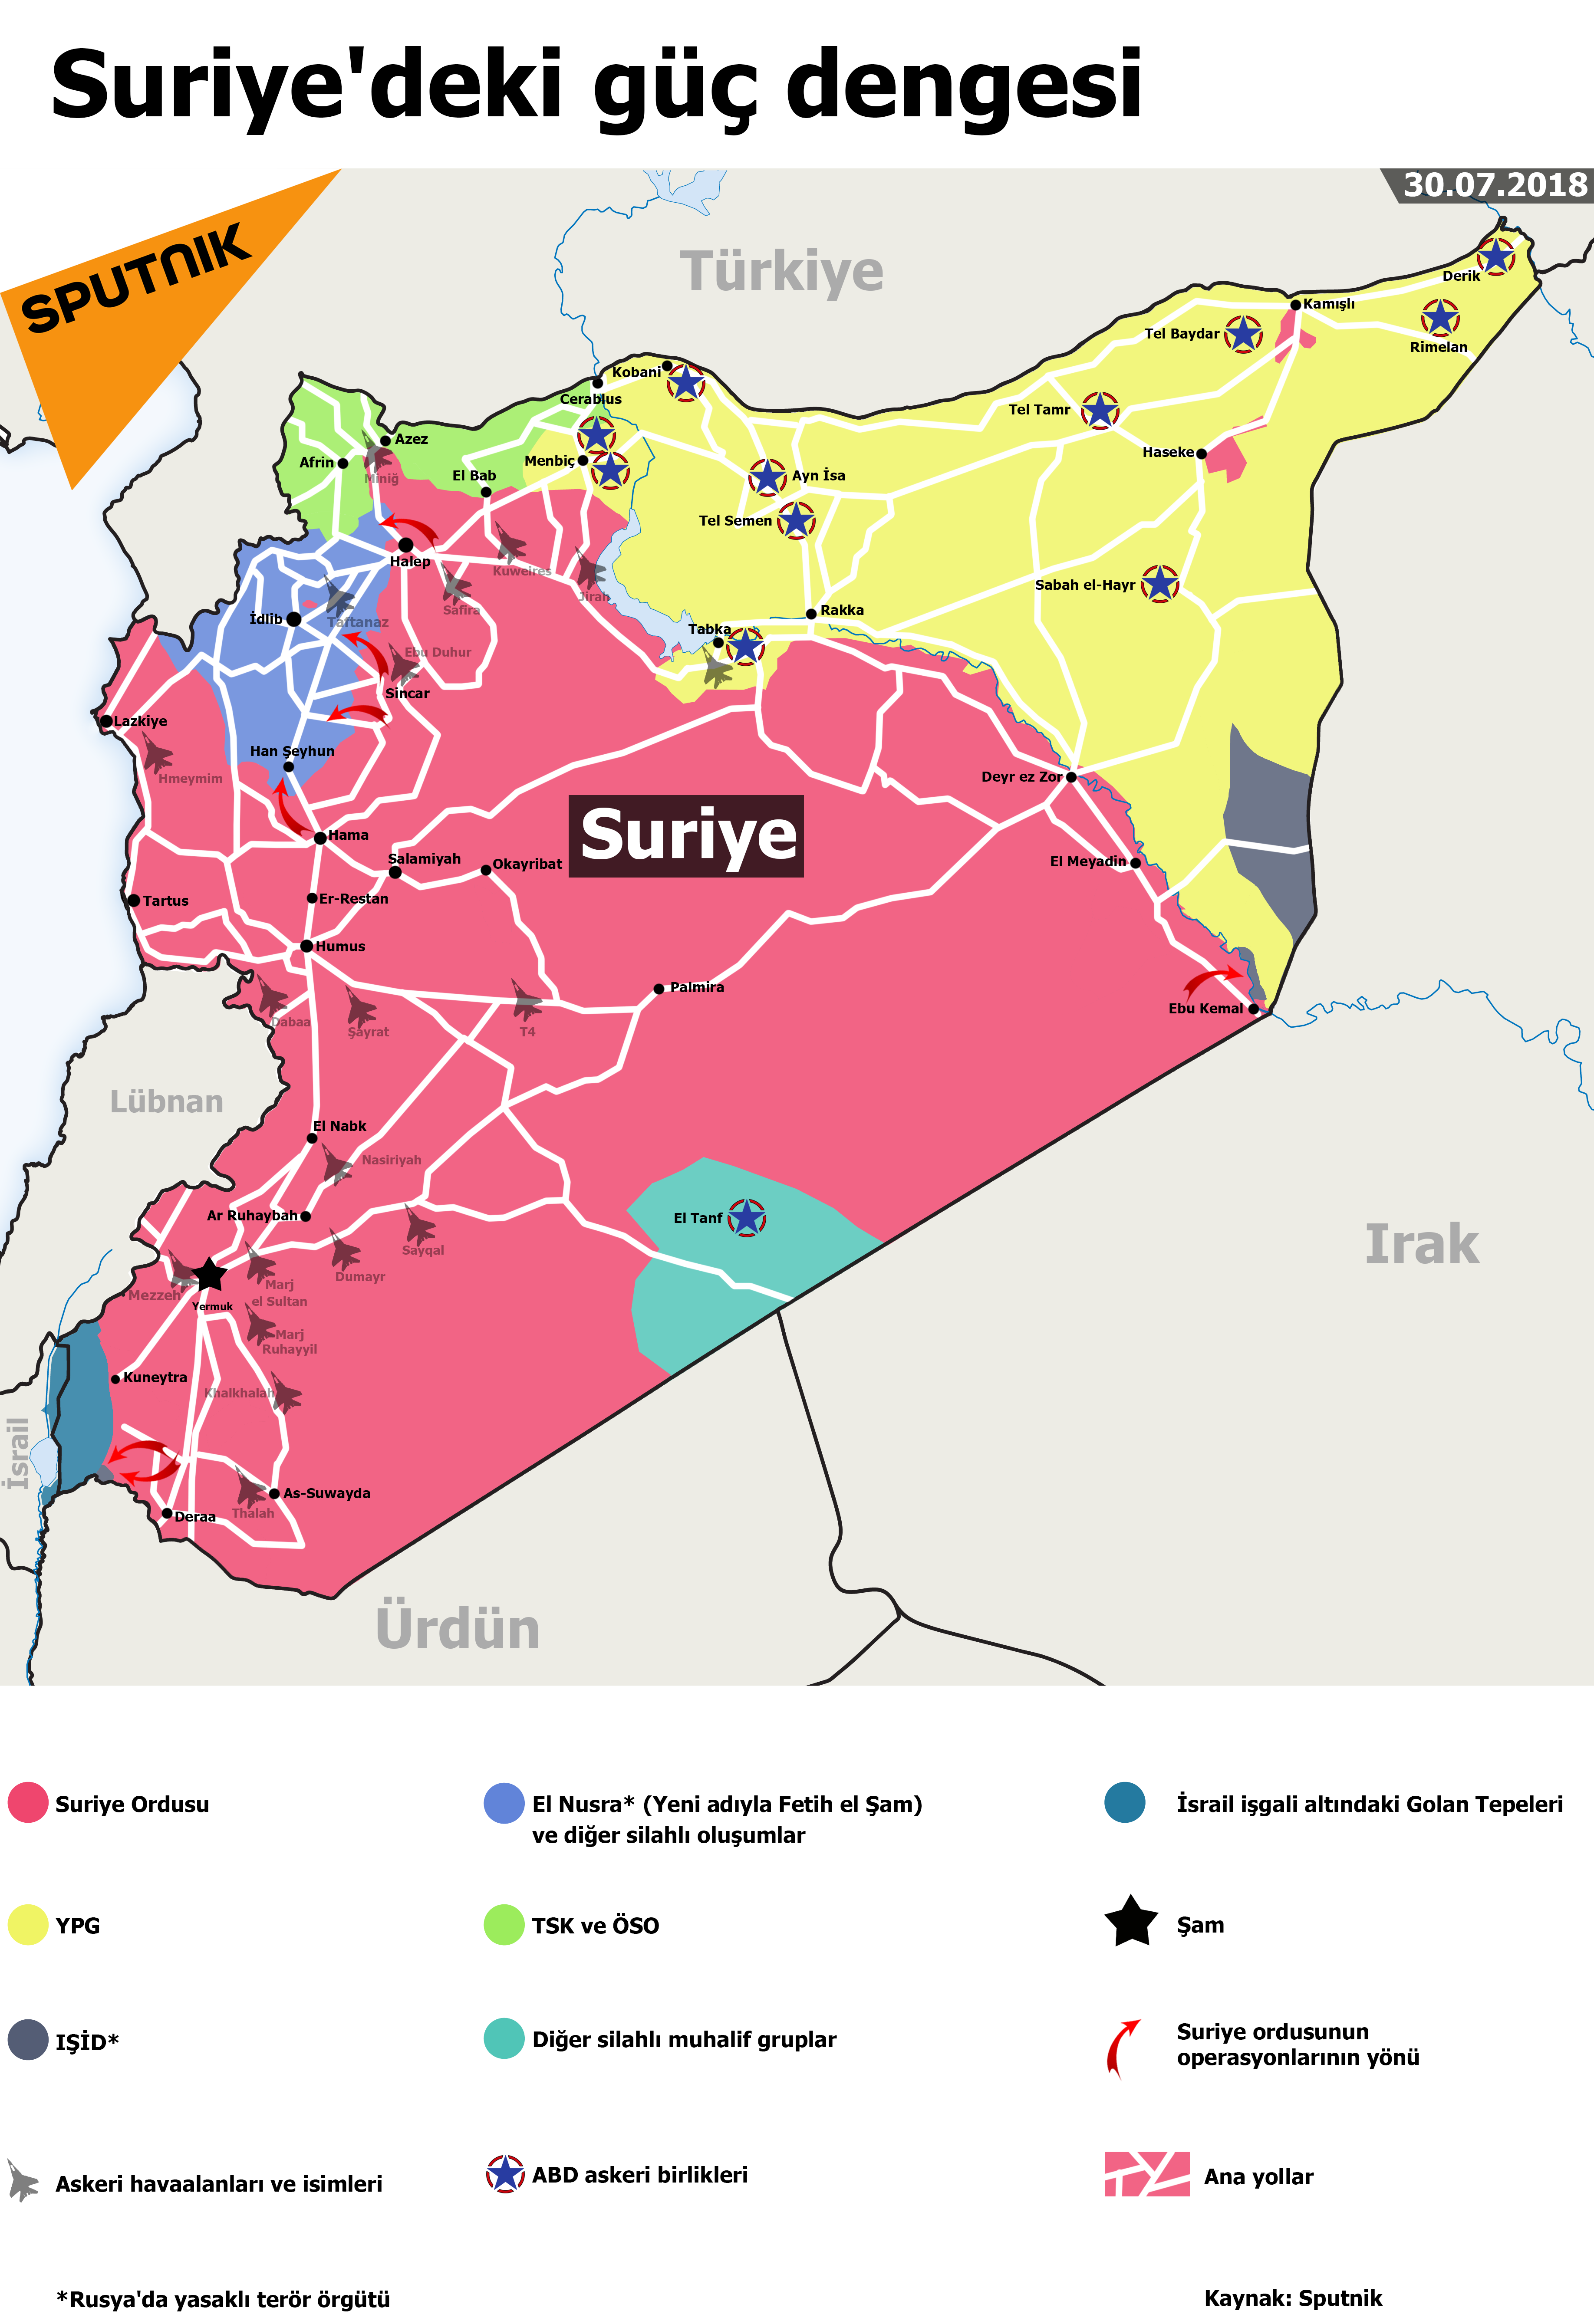 Suriye'deki son durum - Sputnik Türkiye